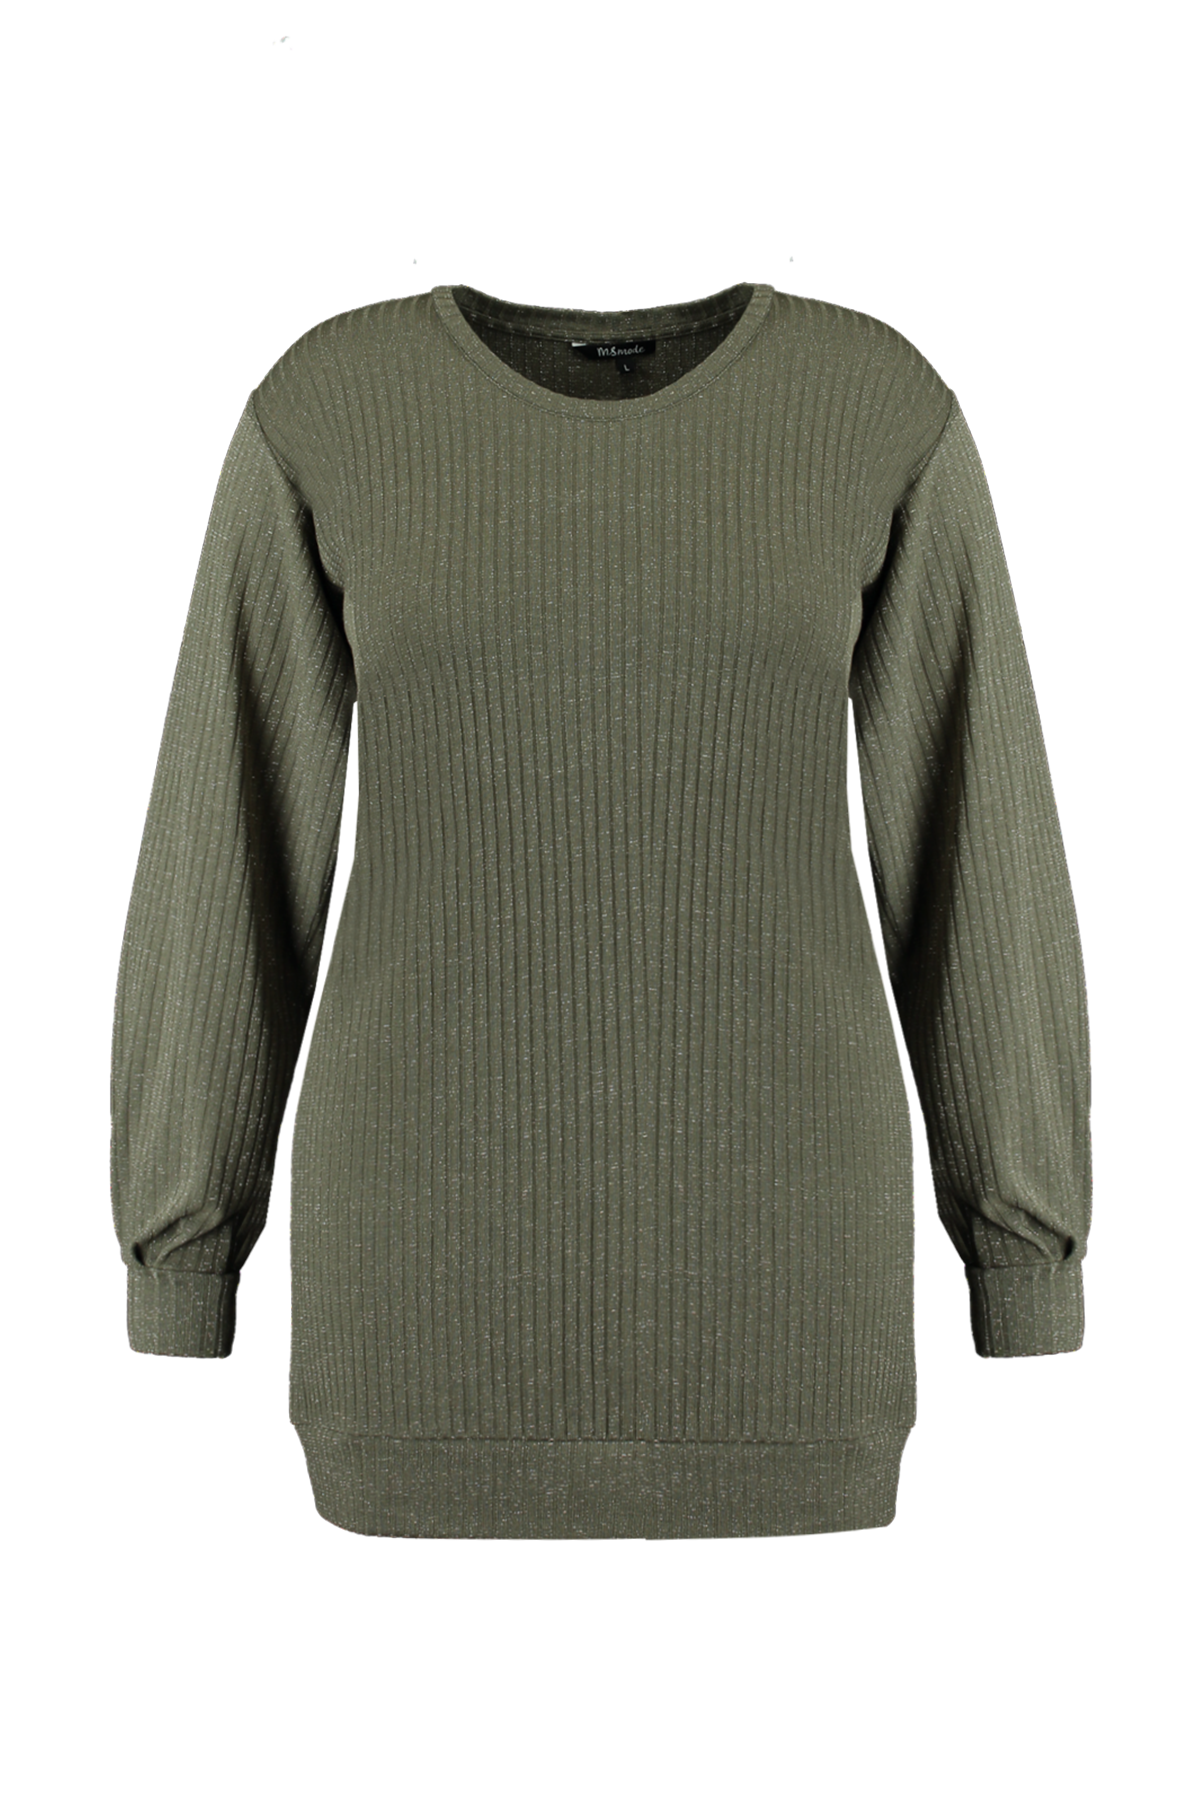 Lange sweater image 1